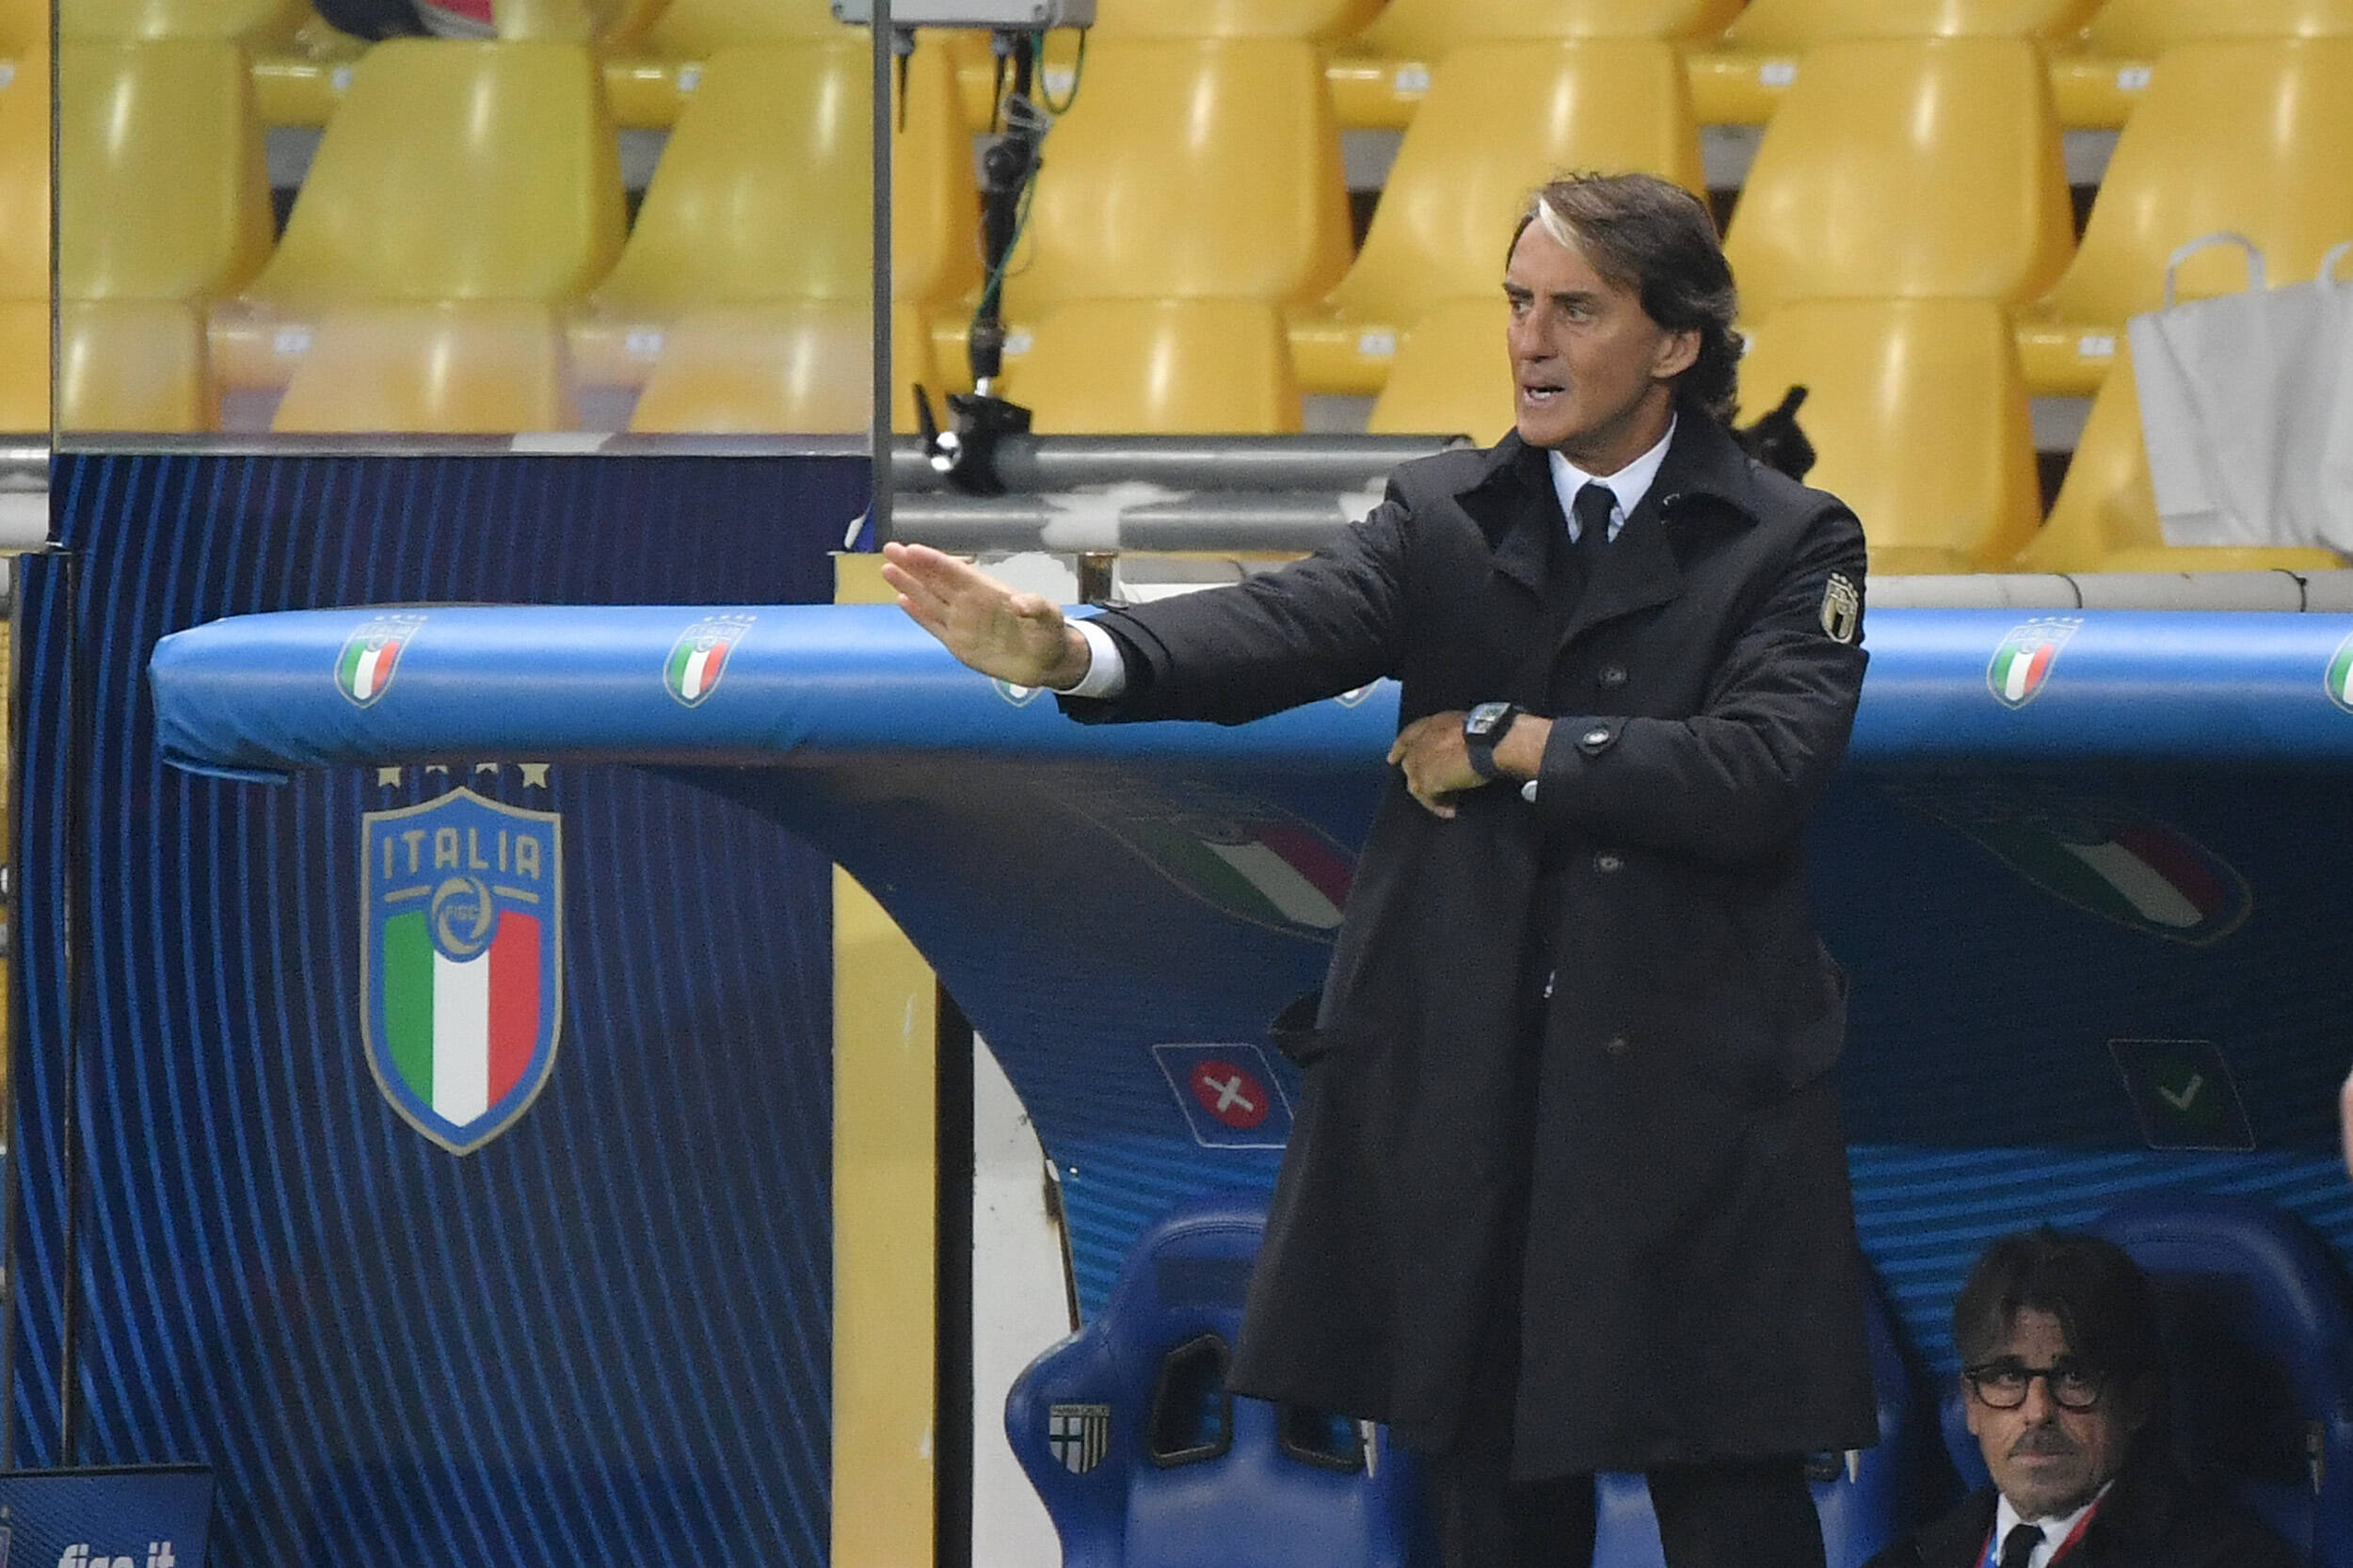 “La mia speranza è di vedere il pubblico” – Roberto Mancini, allenatore della nazionale italiana, in un incontro per la partita inaugurale di Euro 2020 dell’Italia